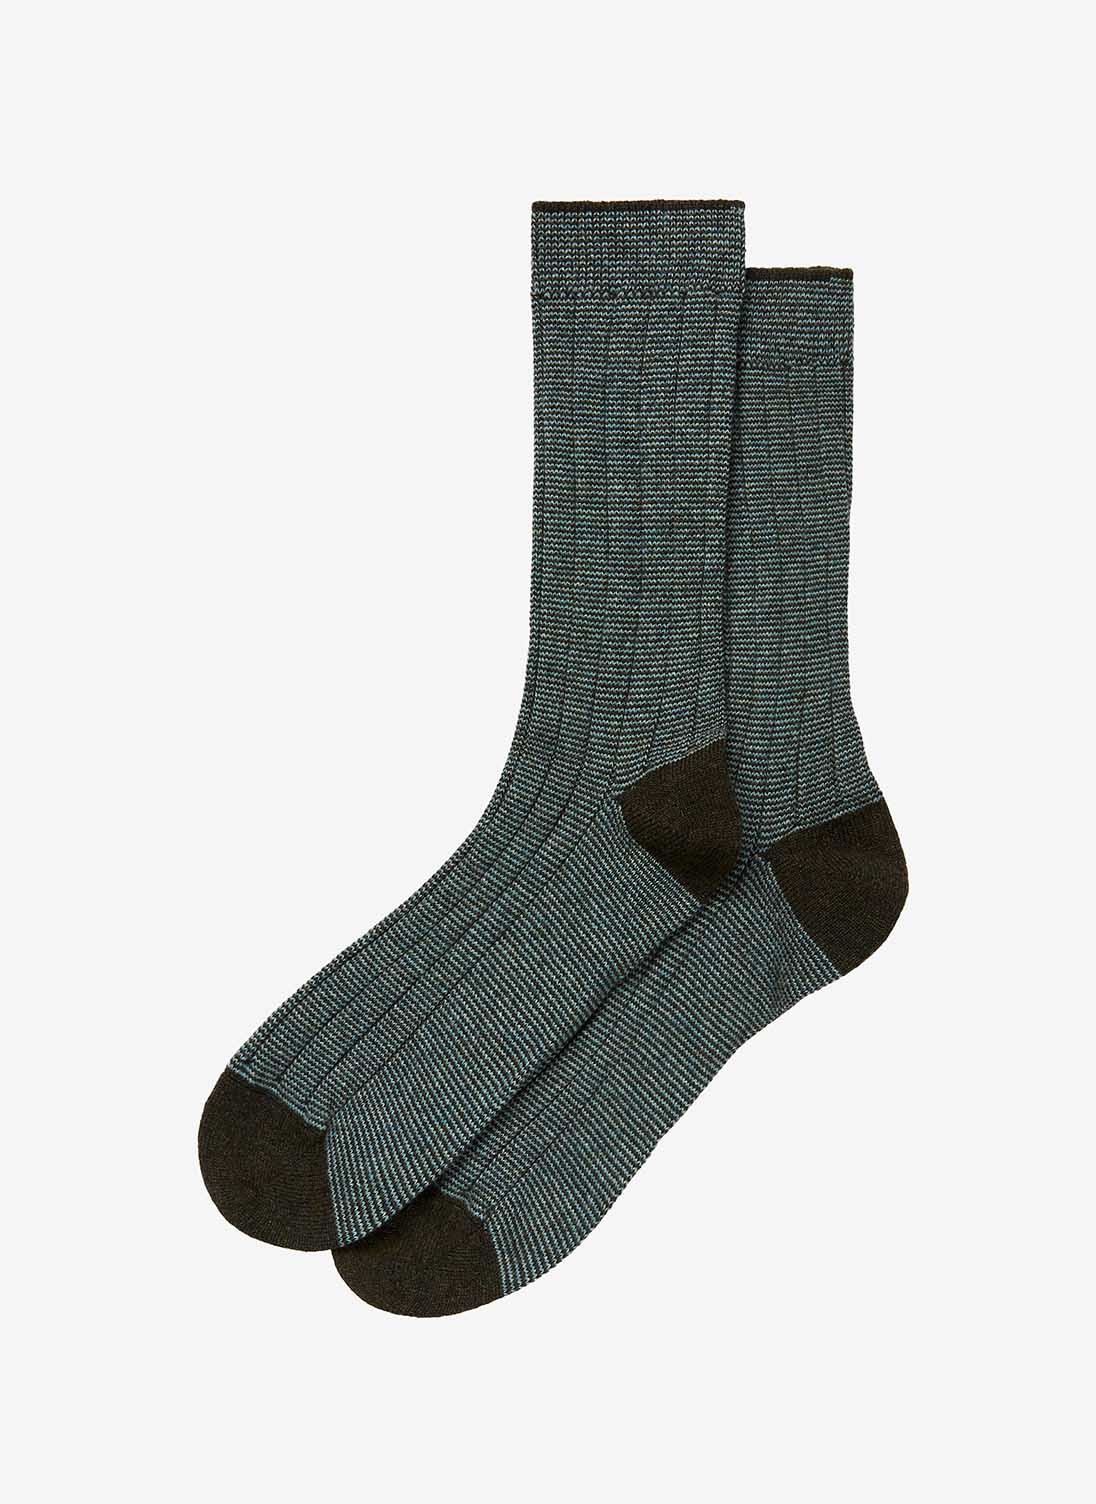 Men's Cashmere Stripy Socks Forest & green lovat